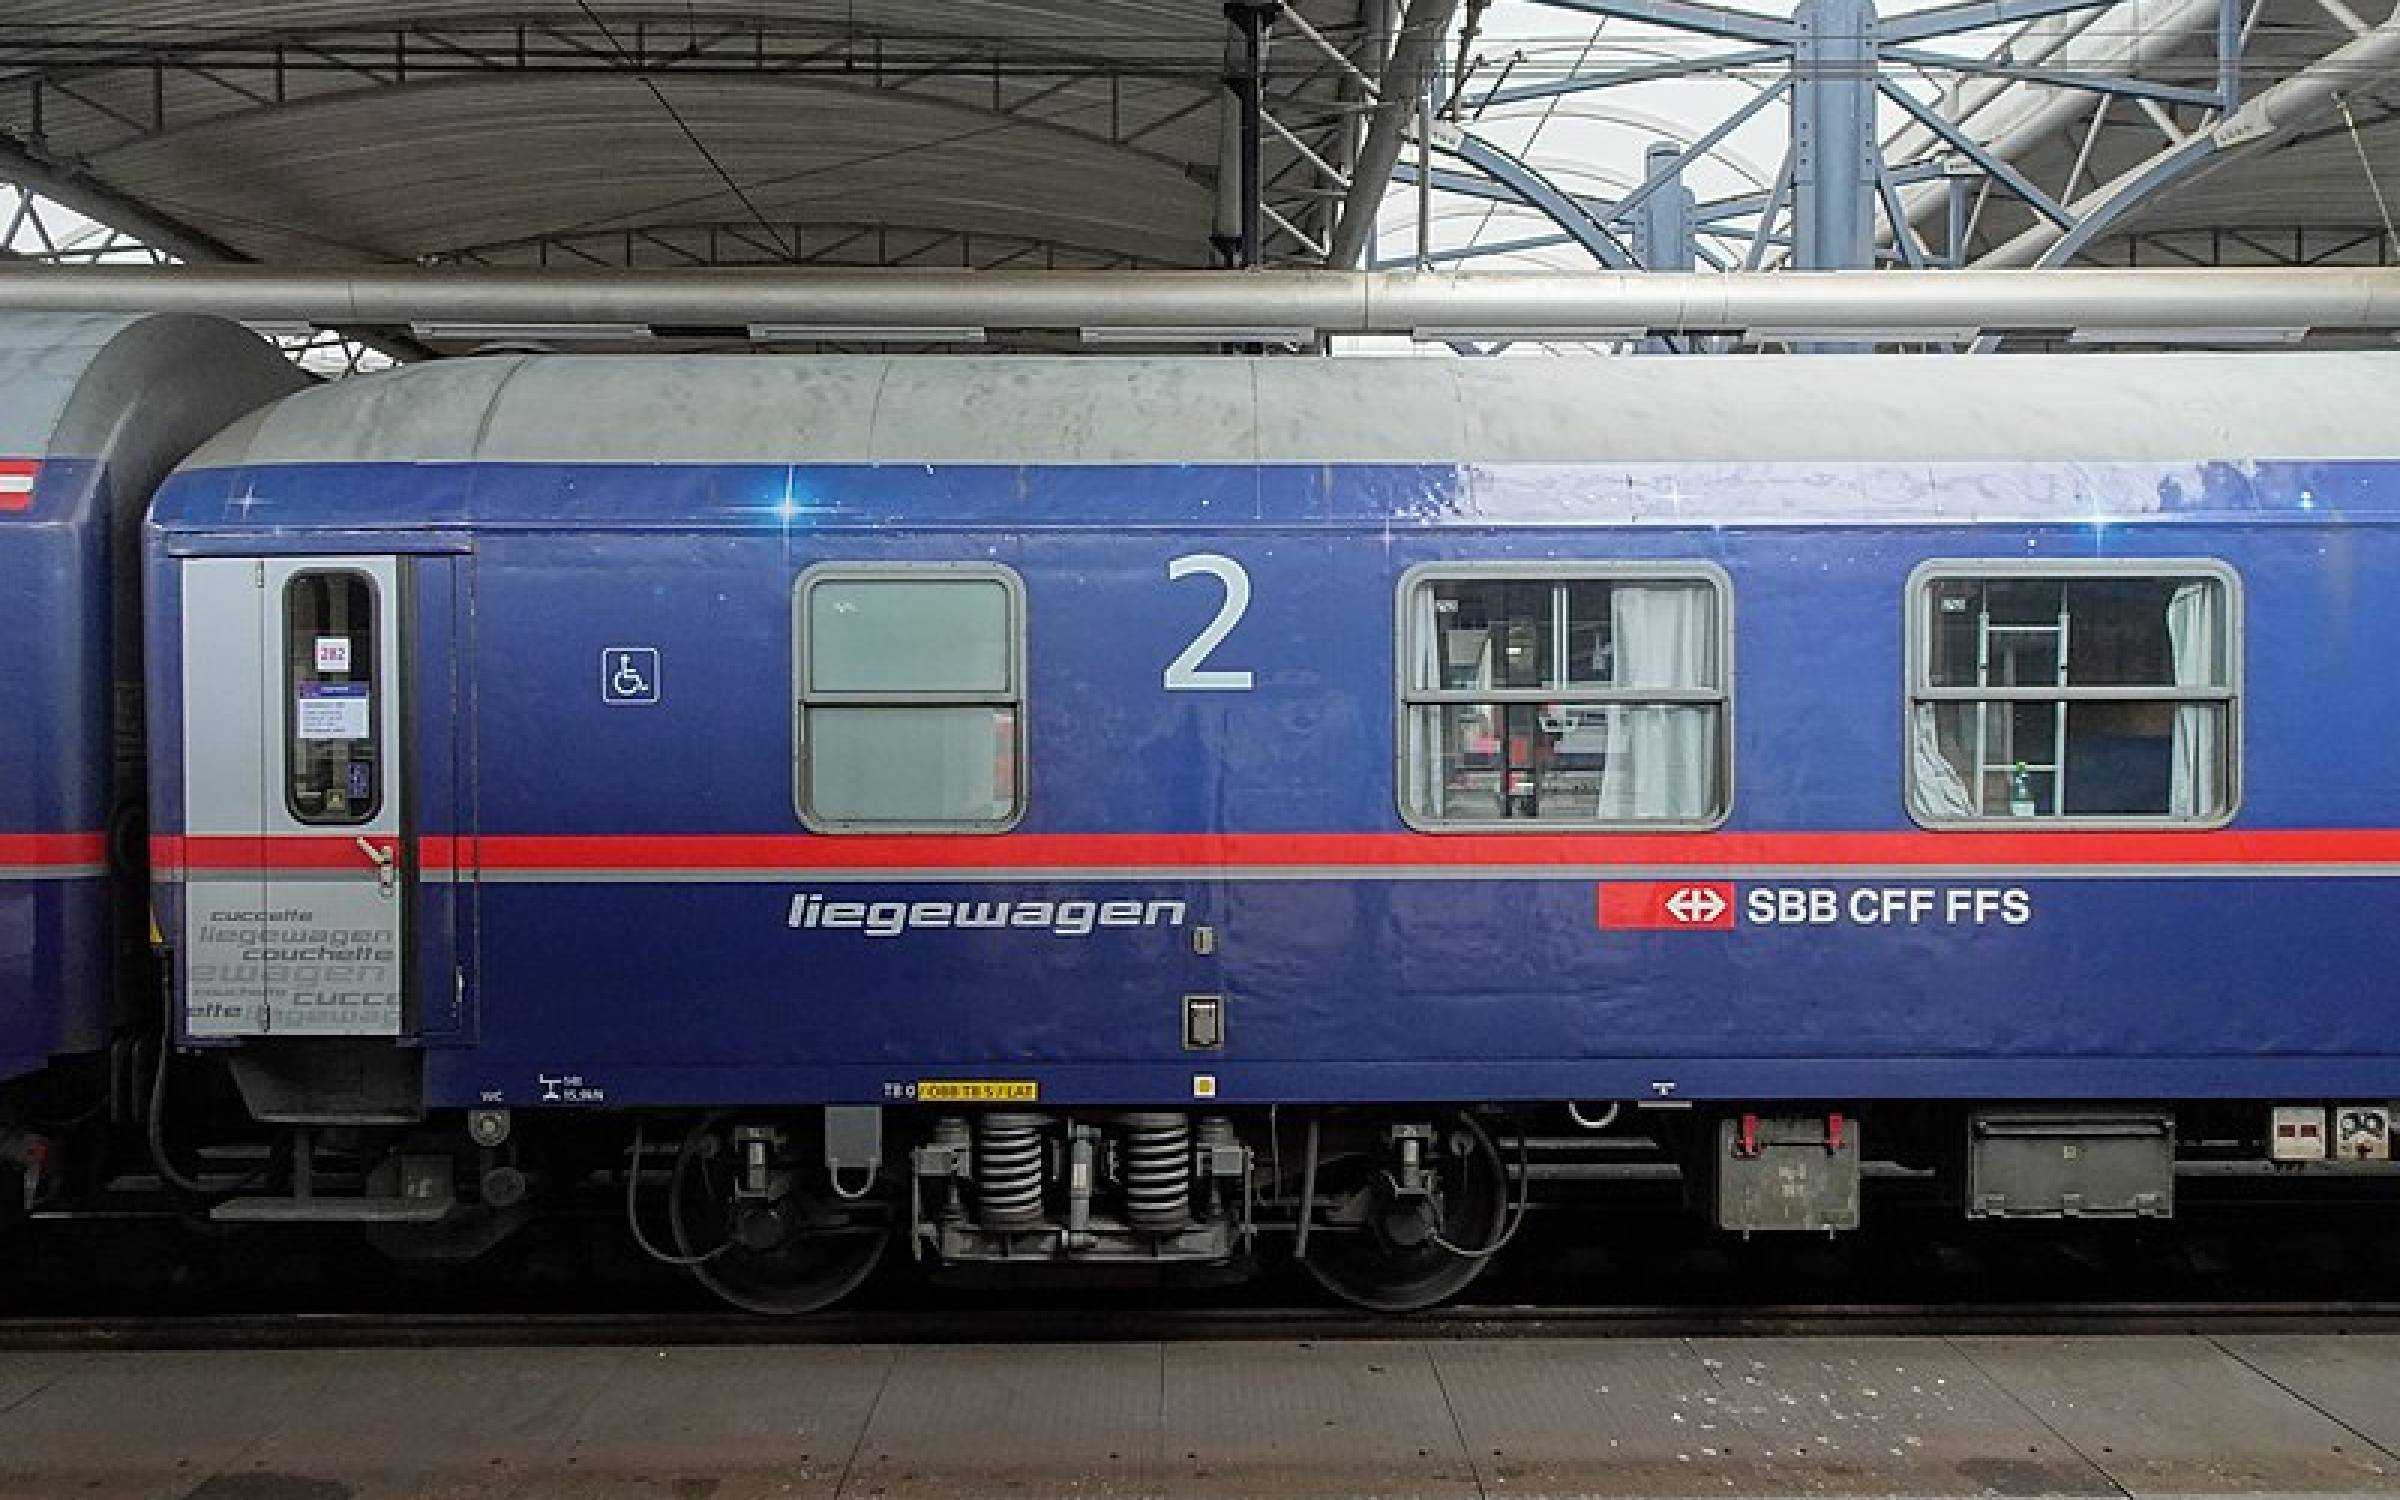  Бельгийское правительство стремится сделать Брюссель «международным железнодорожным узлом» 